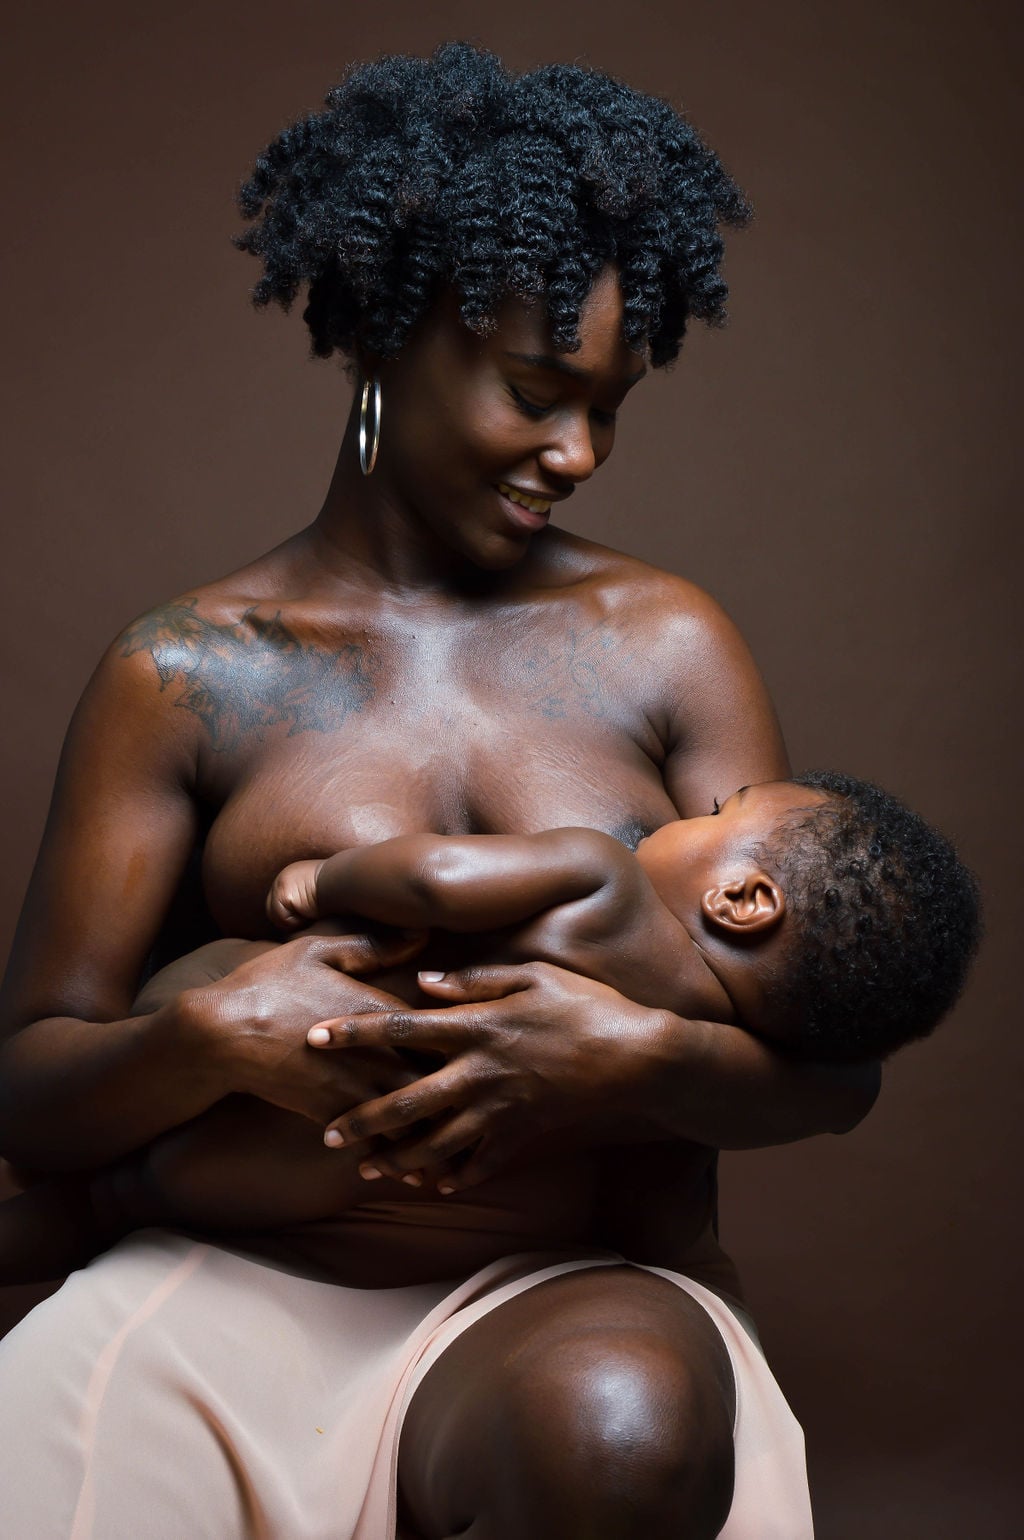 Blacks on moms